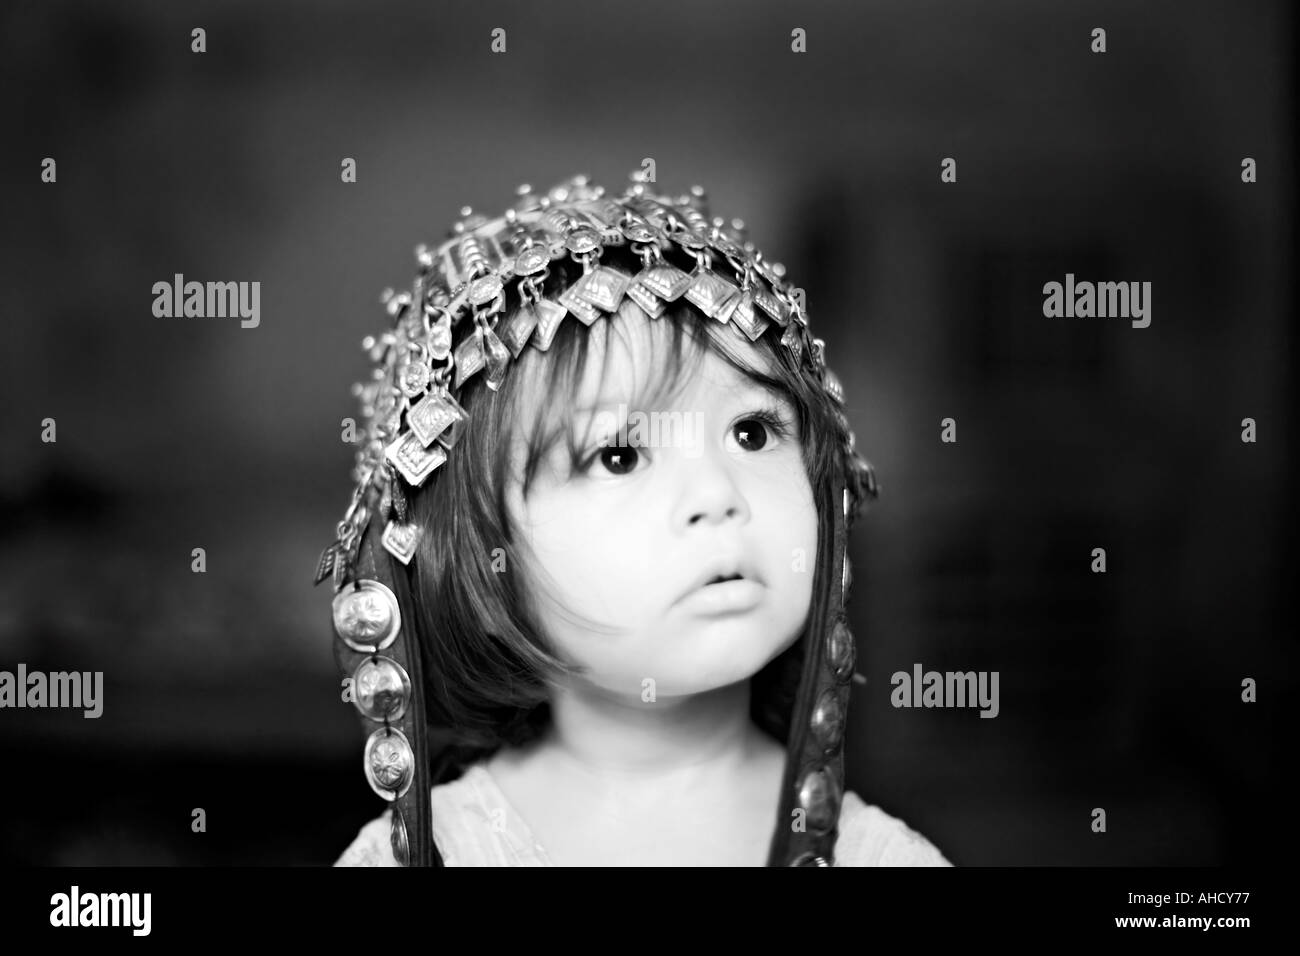 Image noir et blanc d'une belle fillette de deux ans qui porte un chapeau Hunza et regarde vers la droite Banque D'Images